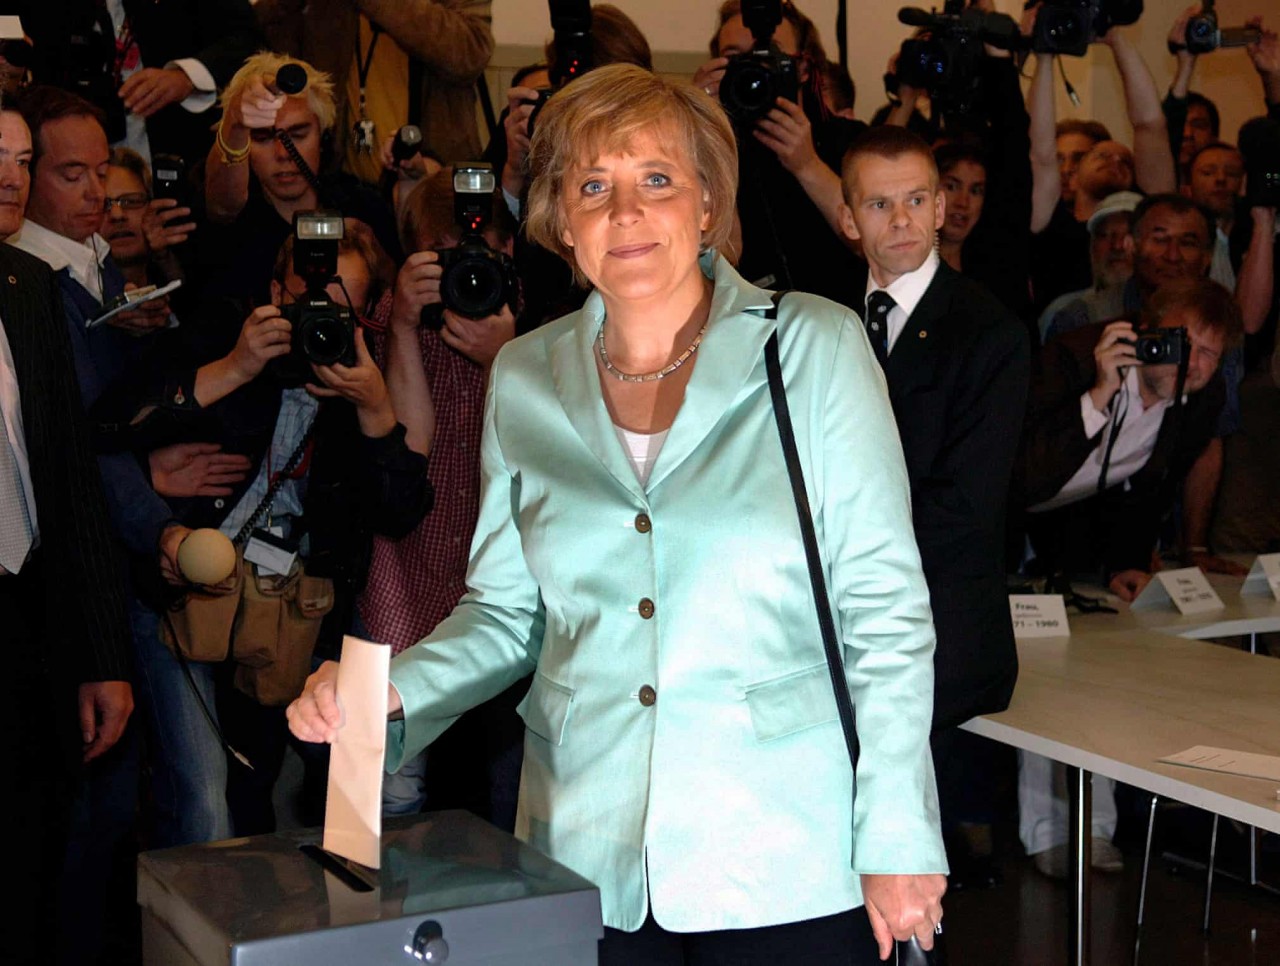 Angela Merkel bỏ phiếu tại một điểm bỏ phiếu ở Berlin trong cuộc bầu cử liên bang năm 2005 Ảnh: Bernd Weissbrod / EPA